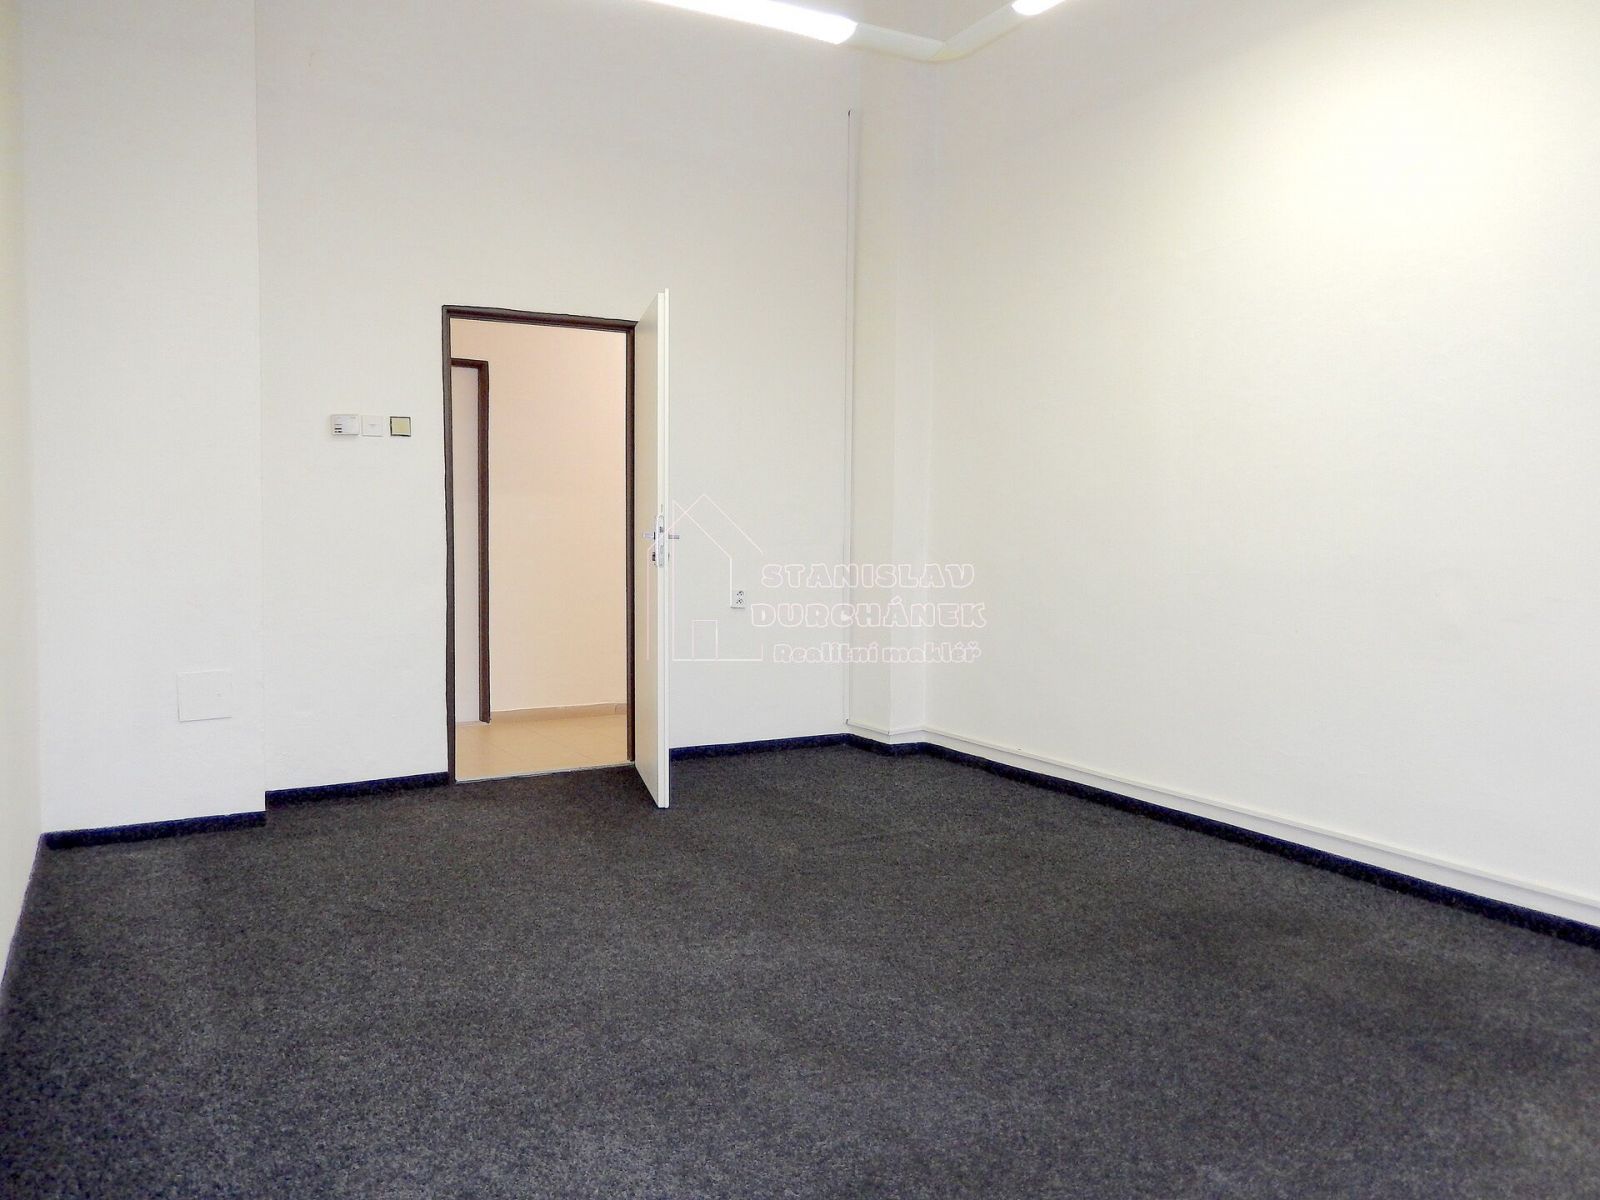 Pronájem kanceláře 17,8 m2, Praha 8-Karlín, ul. Thámova, 2 min od metra Křižíkova, obrázek č. 3